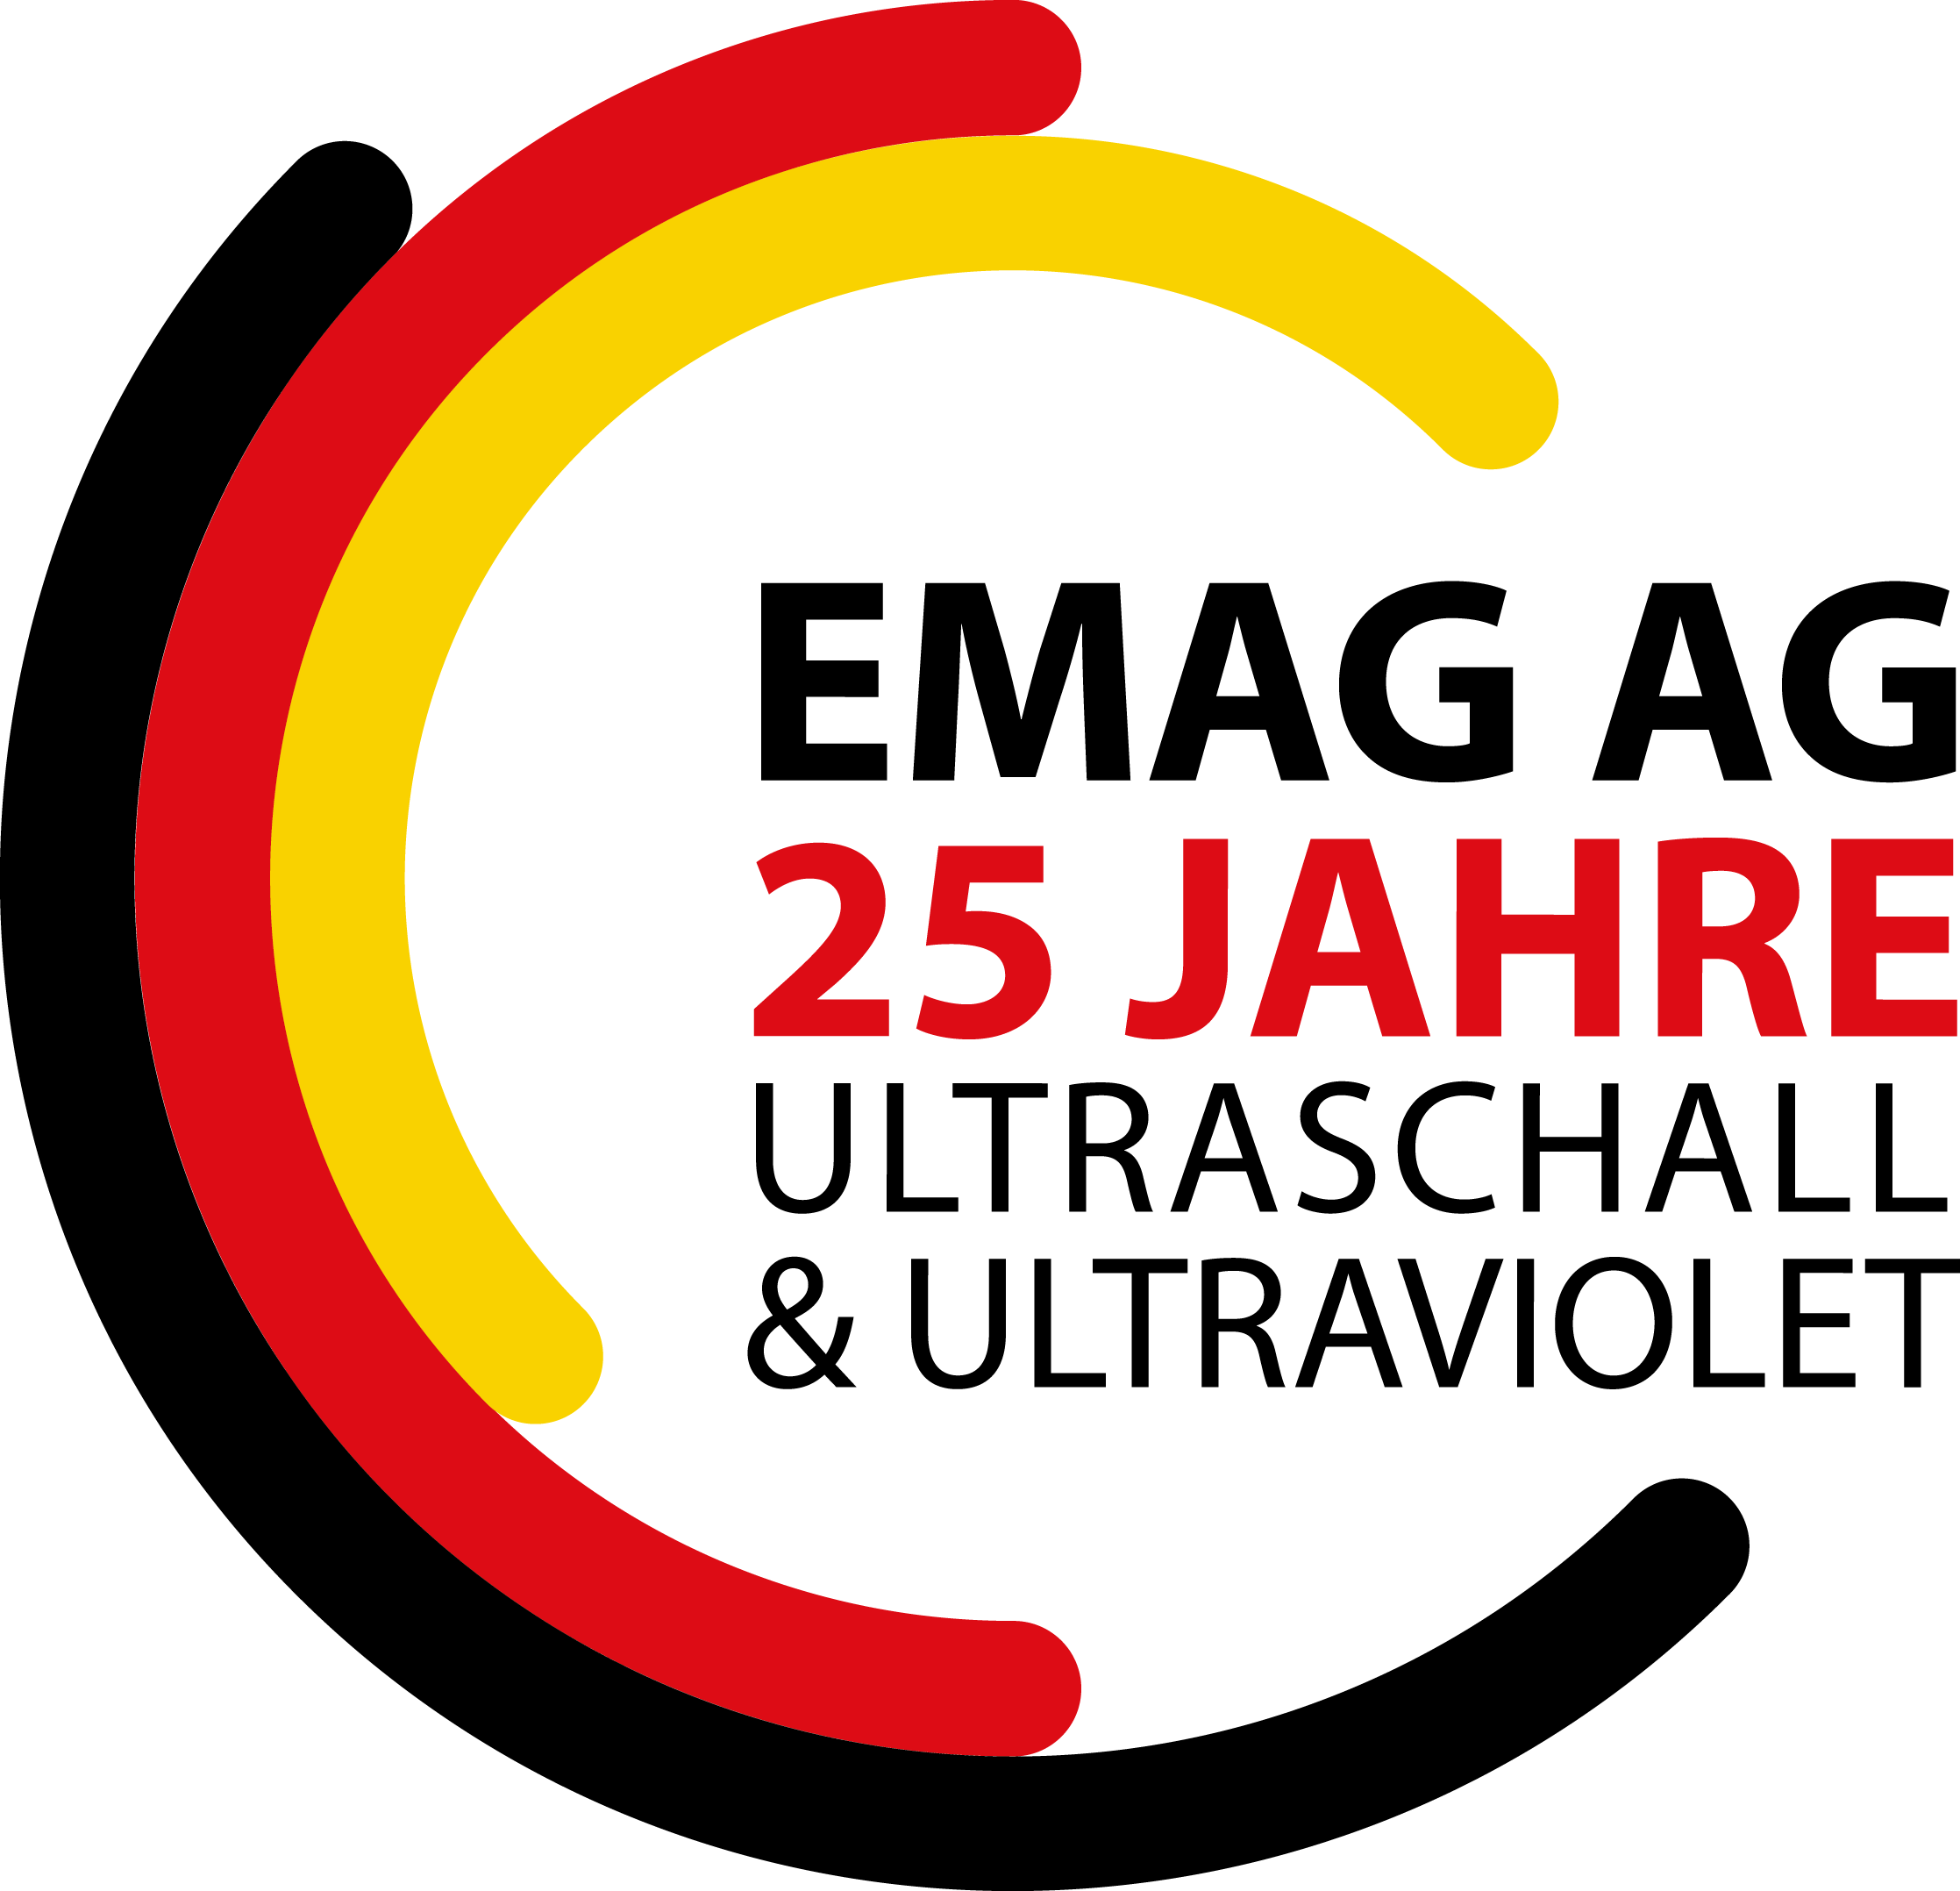 EMAG AG 25 Jahre logo in schwarz rot gold